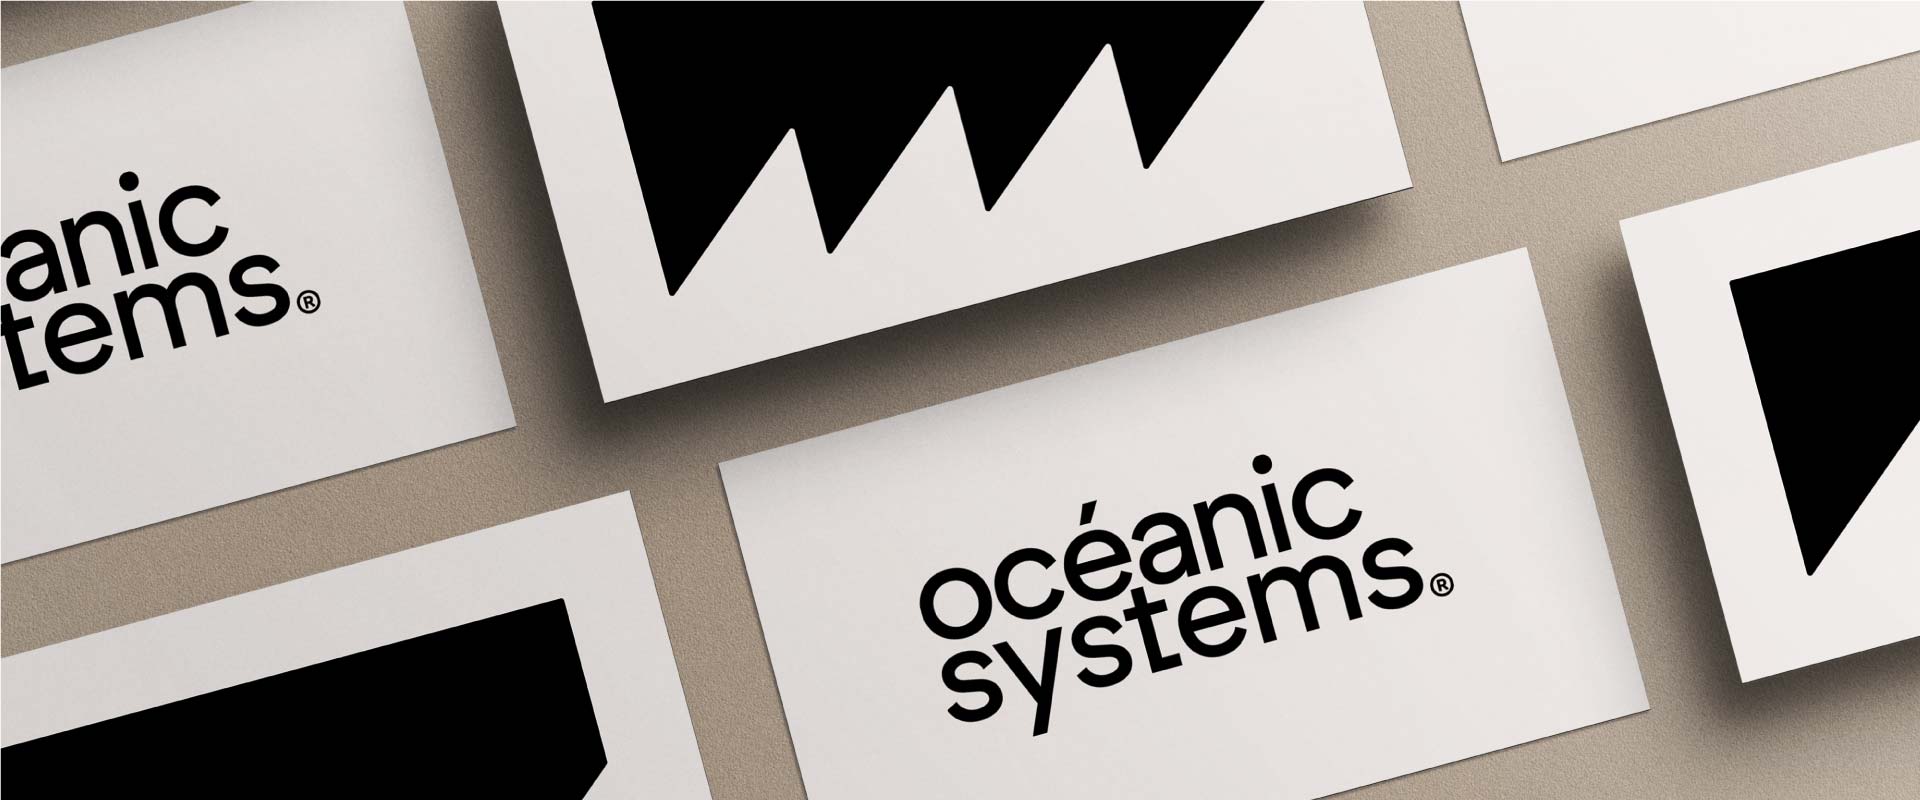 oceanic systems creation identite visuelle logo agence de communication saint gilles croix de vie